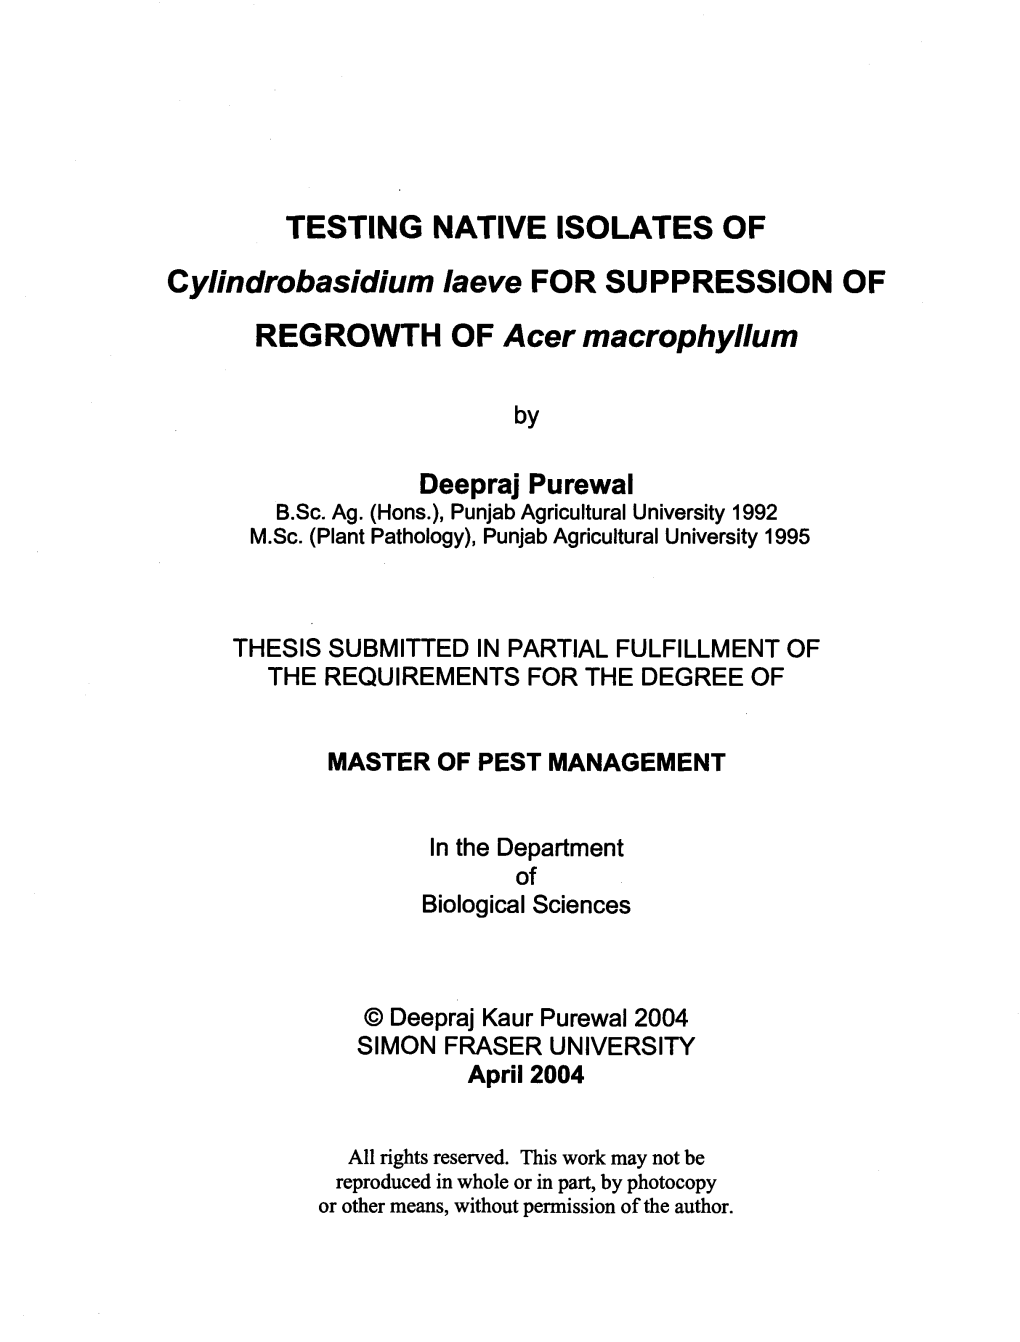 TESTING NATIVE ISOLATES of Cylindrobasidium Laeve for SUPPRESSION of REGROWTH of Acer Macrophyllum